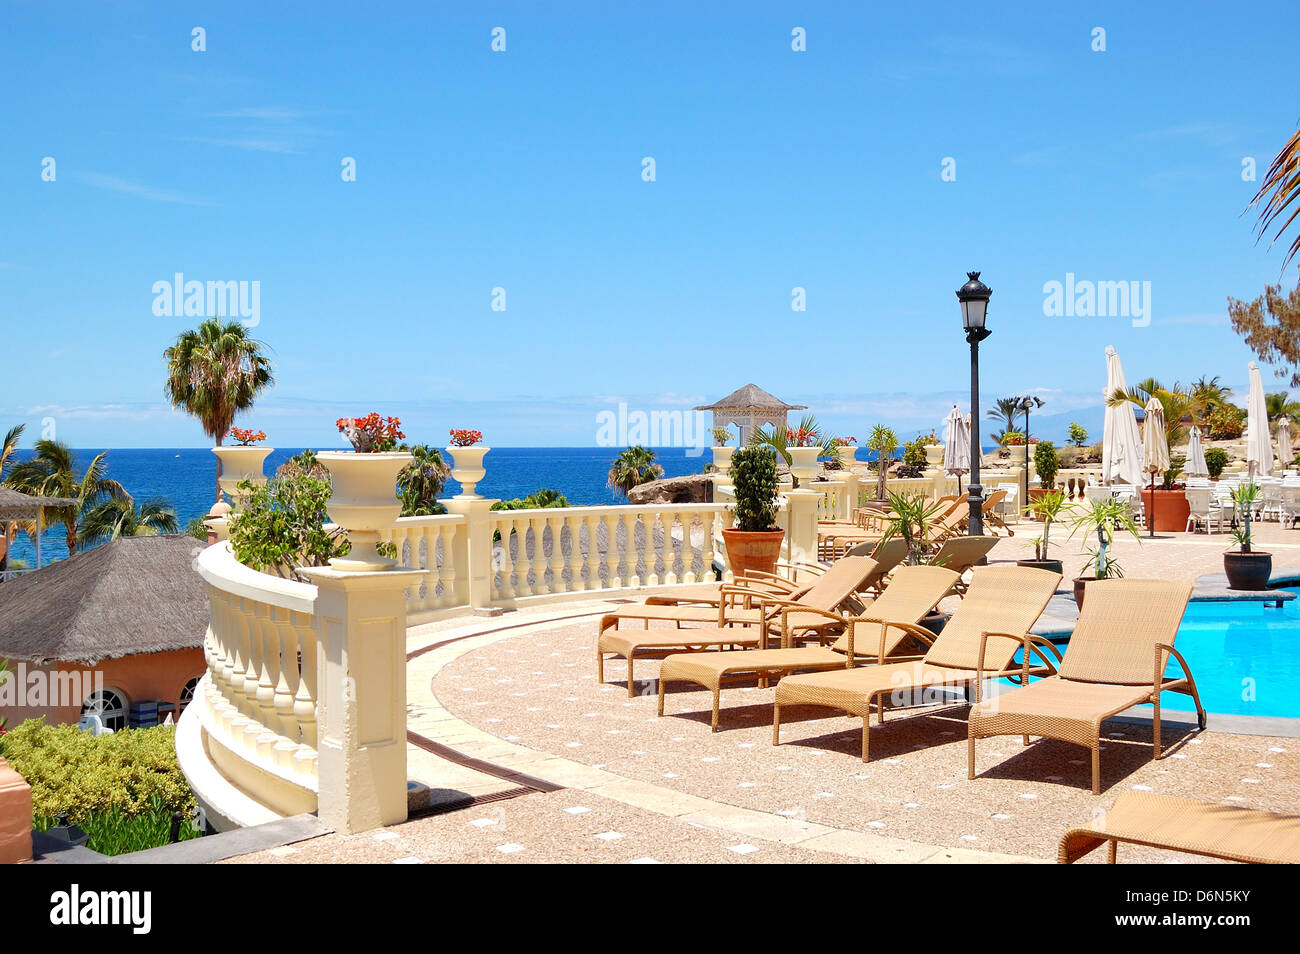 Terrasse mit Meerblick von der Luxus-Hotel Restaurant, auf der Insel Teneriffa, Spanien Stockfoto